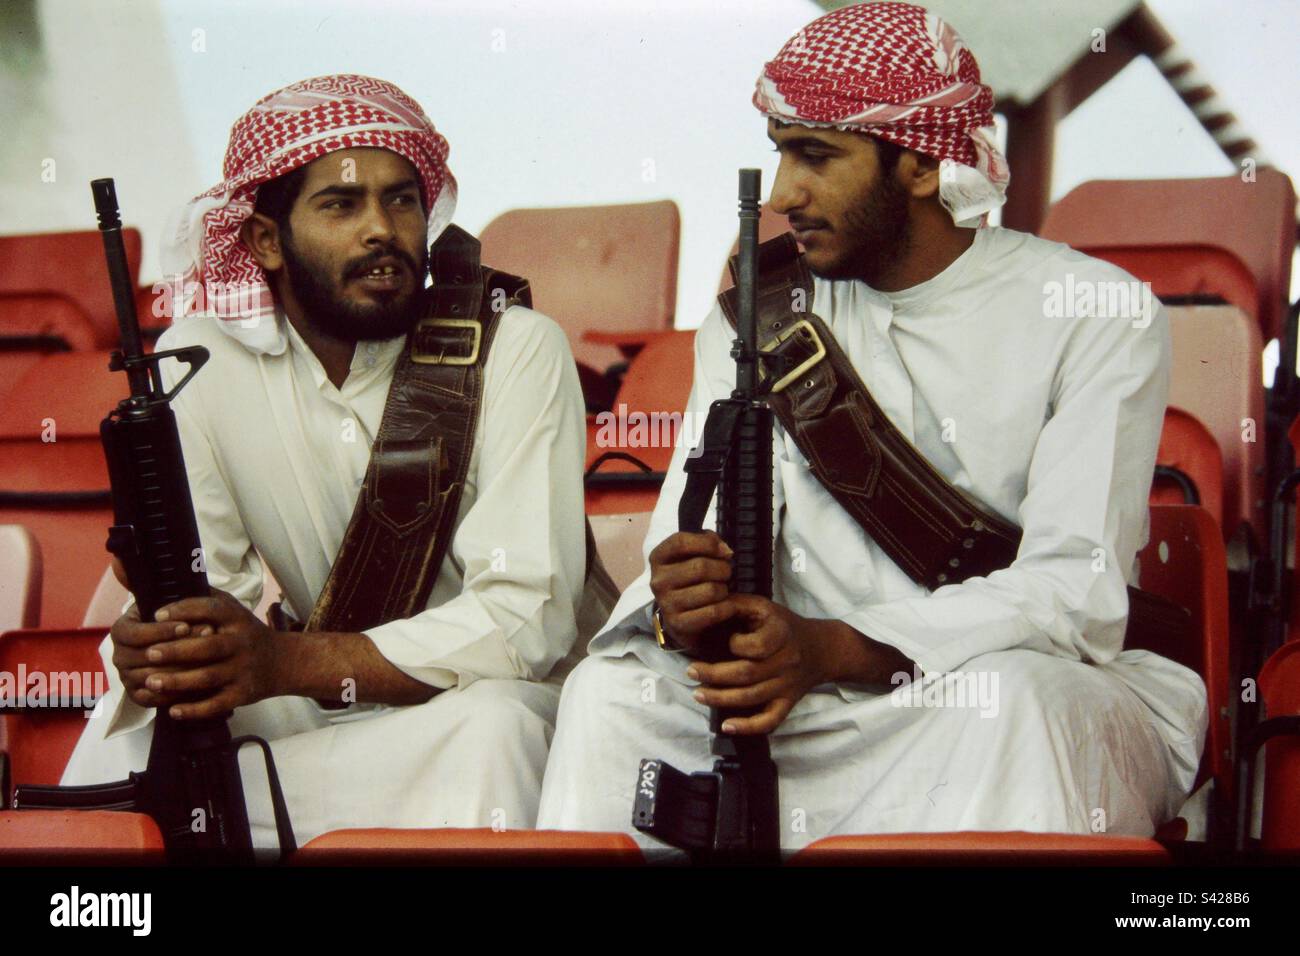 Two armed bodyguards belonging to Sheikh Mohammed bin Rashid Al Maktoum ruler of Dubai. Stock Photo